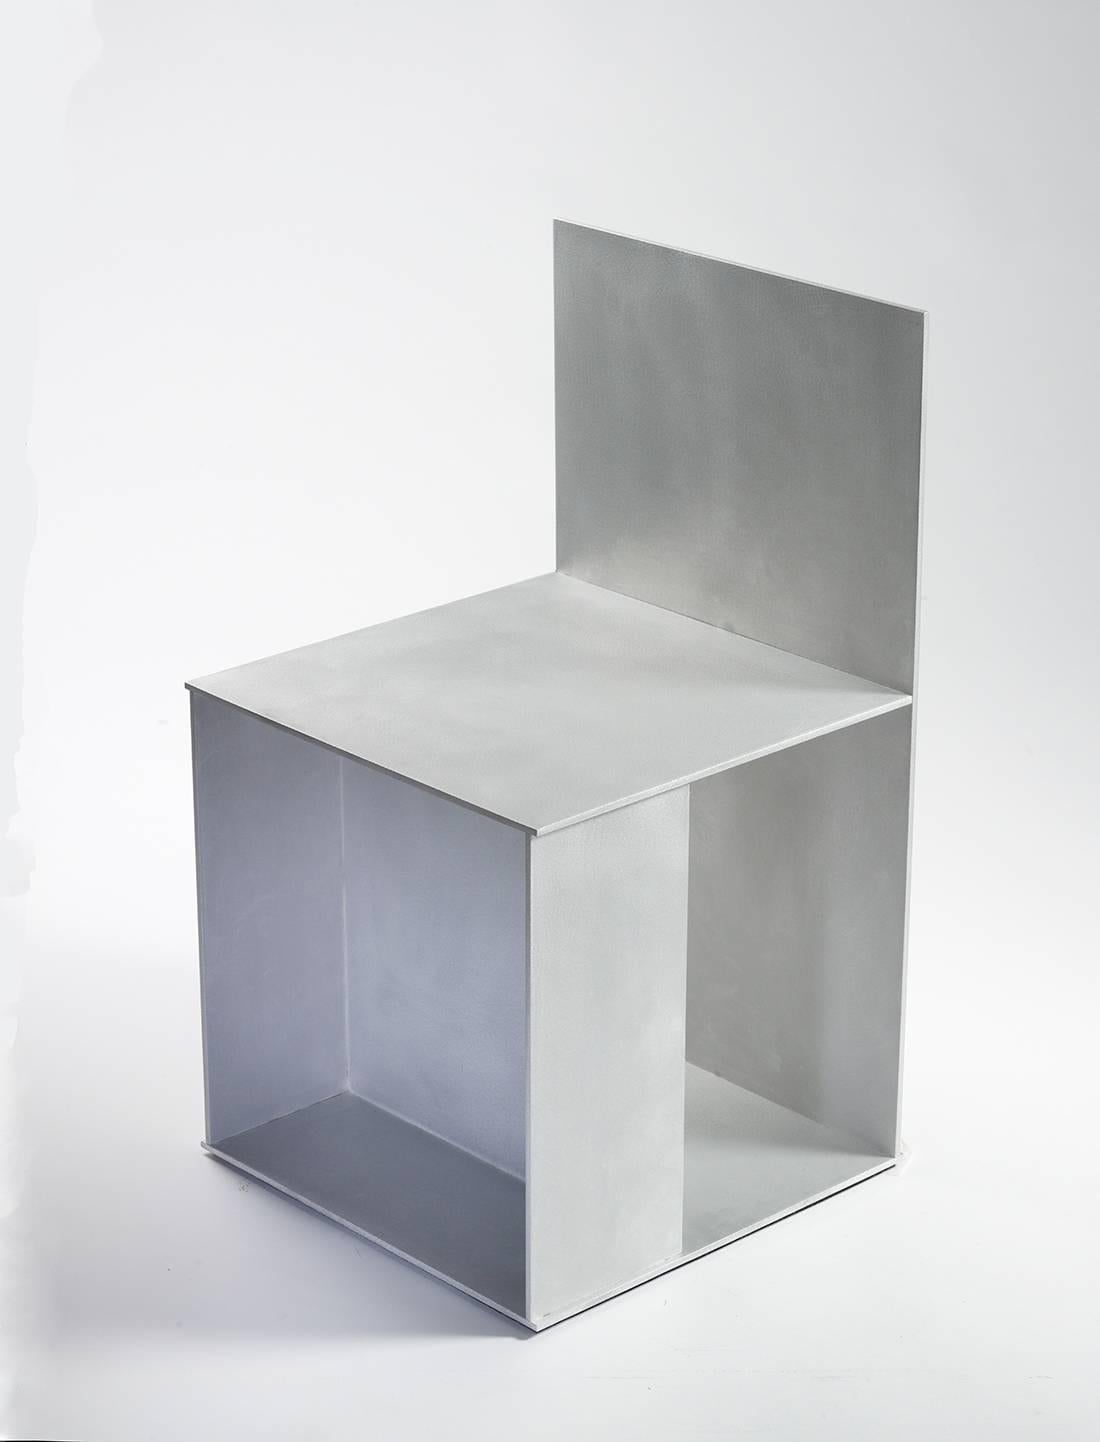 Minimalistischer Beistellstuhl aus 0,25 Zoll dickem Aluminiumblech, Teil eines Soloprojekts mit neun Variationen in der Mondo Cane Gallery im Jahr 2011. Digital geschnittene Aluminiumplatten werden mit vertieften, glatt geschliffenen Schweißnähten